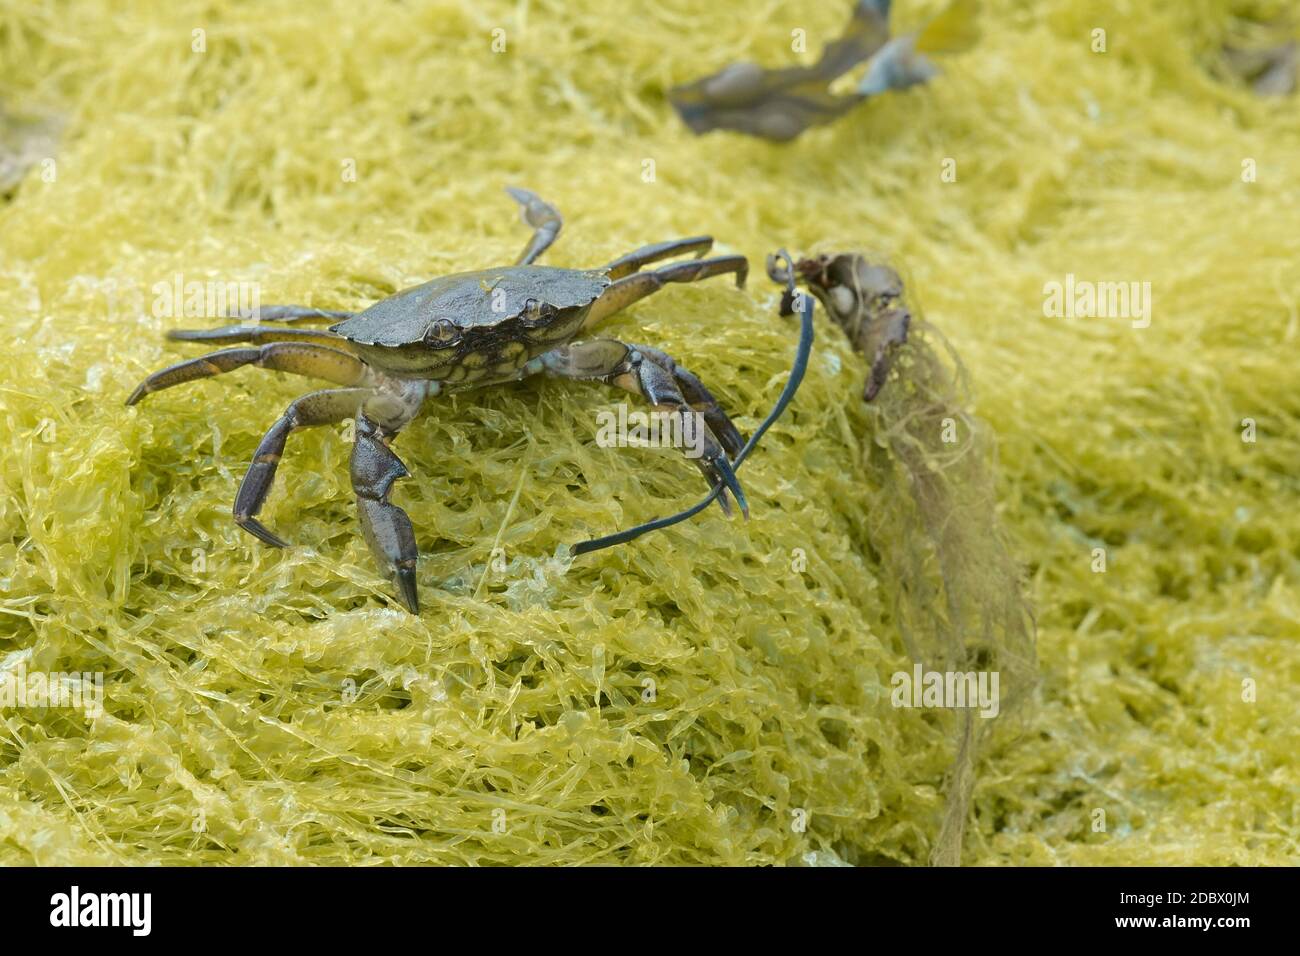 Le crabe commun, également connu sous le nom de crabe vert européen, Carcinus maenas, se dresse sur l'algue jaune brandissant l'algue dans sa griffe gauche. Banque D'Images